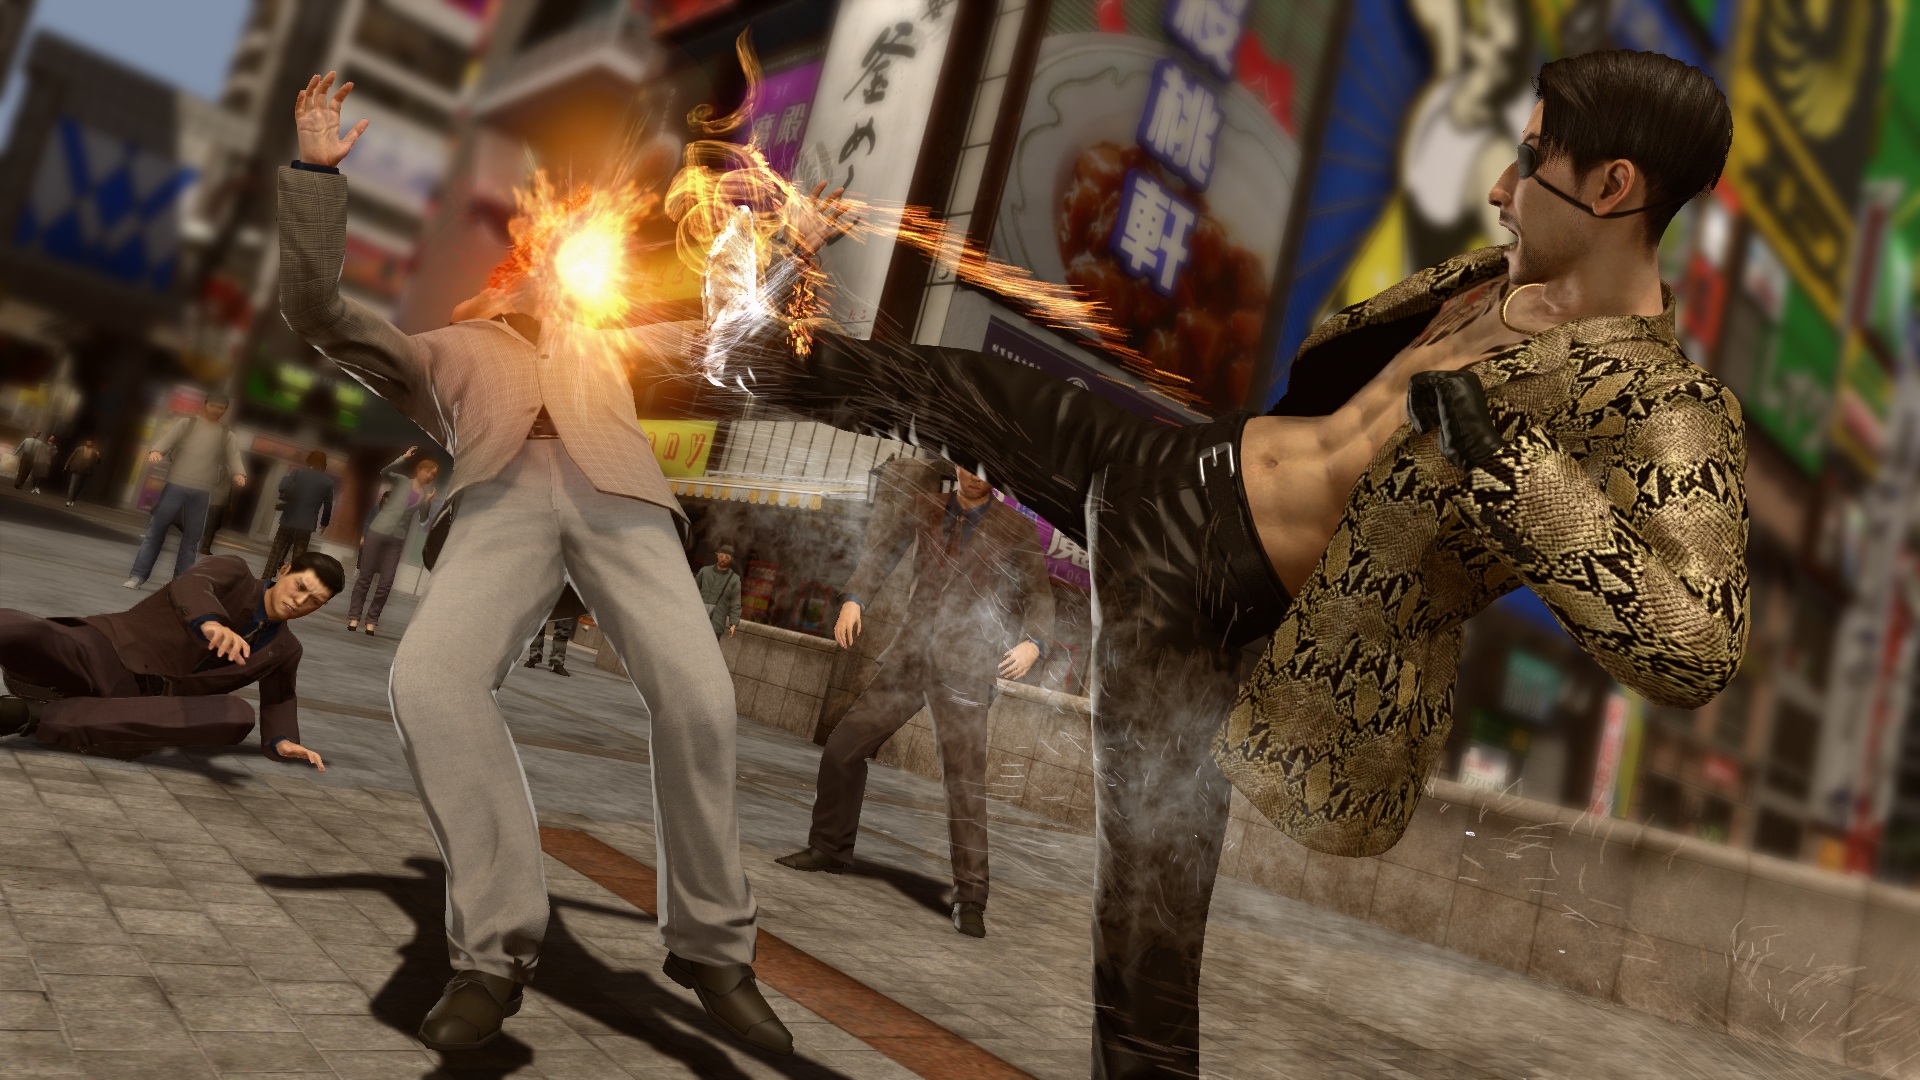 Yakuza Kiwami 2 Clan Creator Bundle DLC, PC Steam Downloadable Content